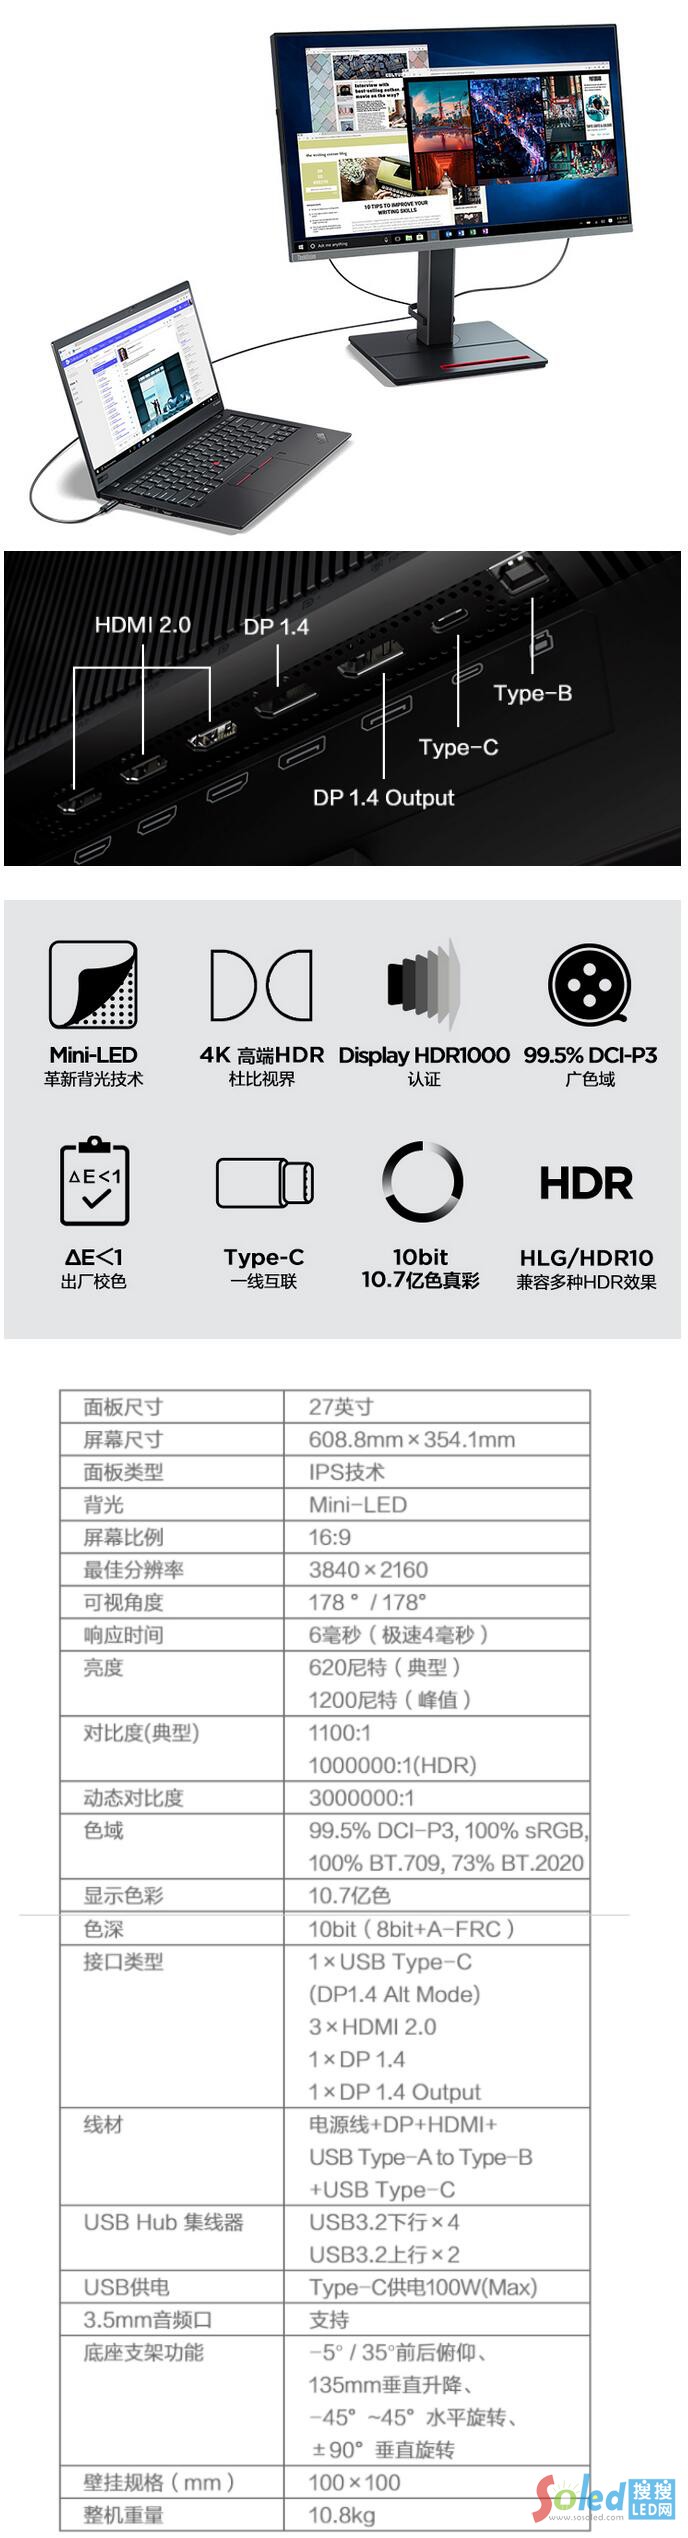 15999元起 1万颗mini LED 联想发布超高端4K显示器